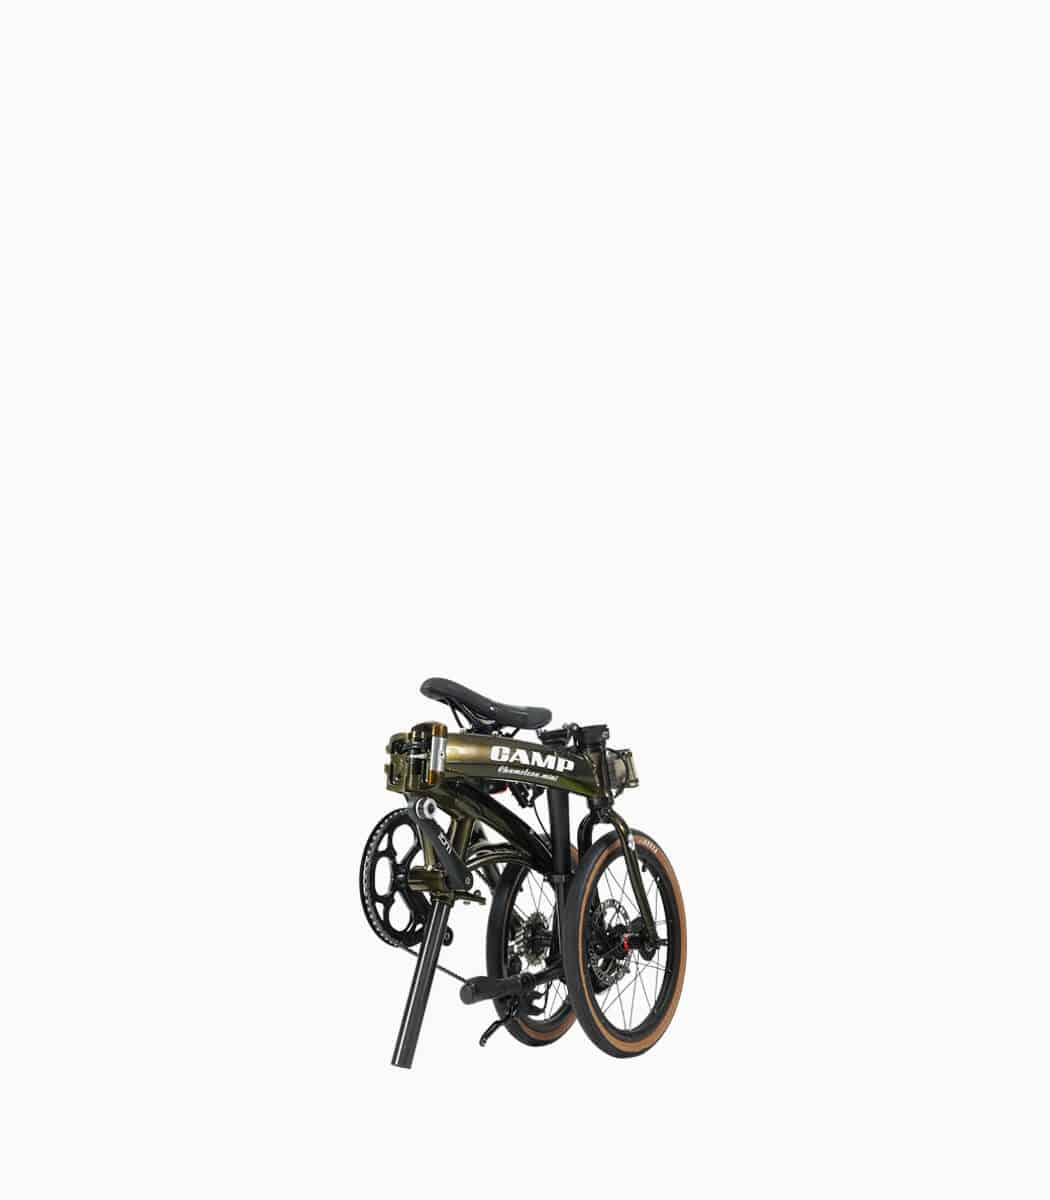 CHAMELEON MINI (BLACK GOLD) foldable bicycle folded angled left